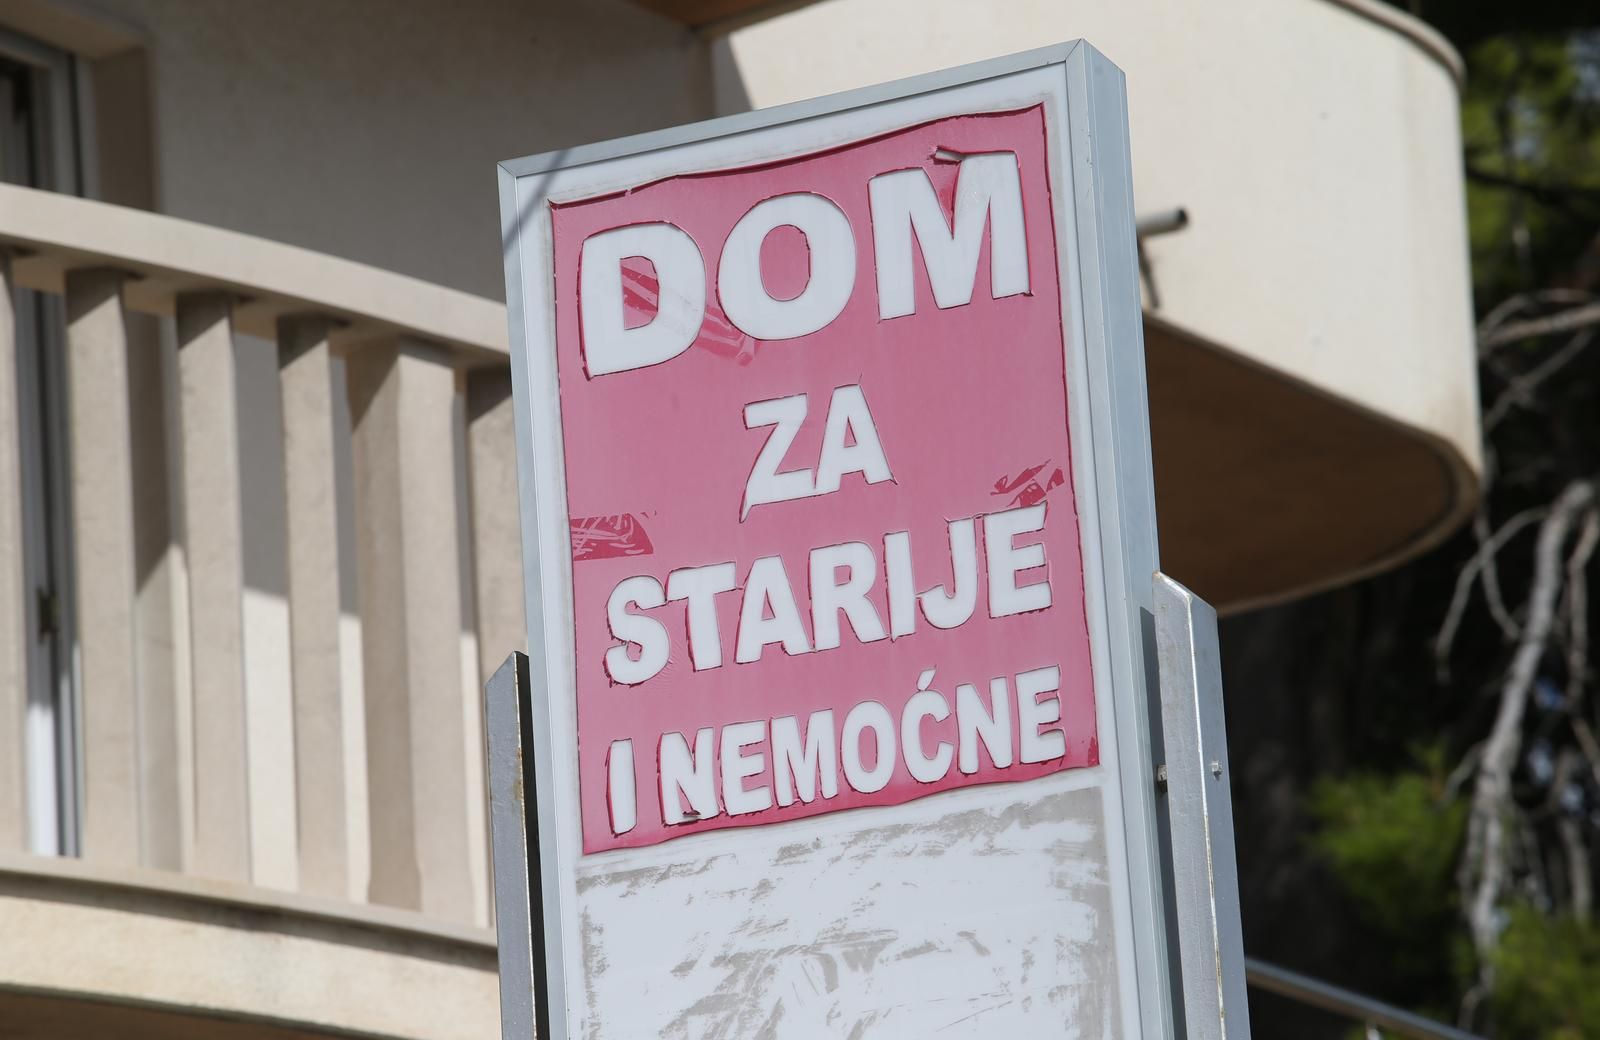 28.09.2020., Dugi Rat - Dom za starije i nemocne "Toleranca".
Photo:Ivo Cagalj/PIXSELL